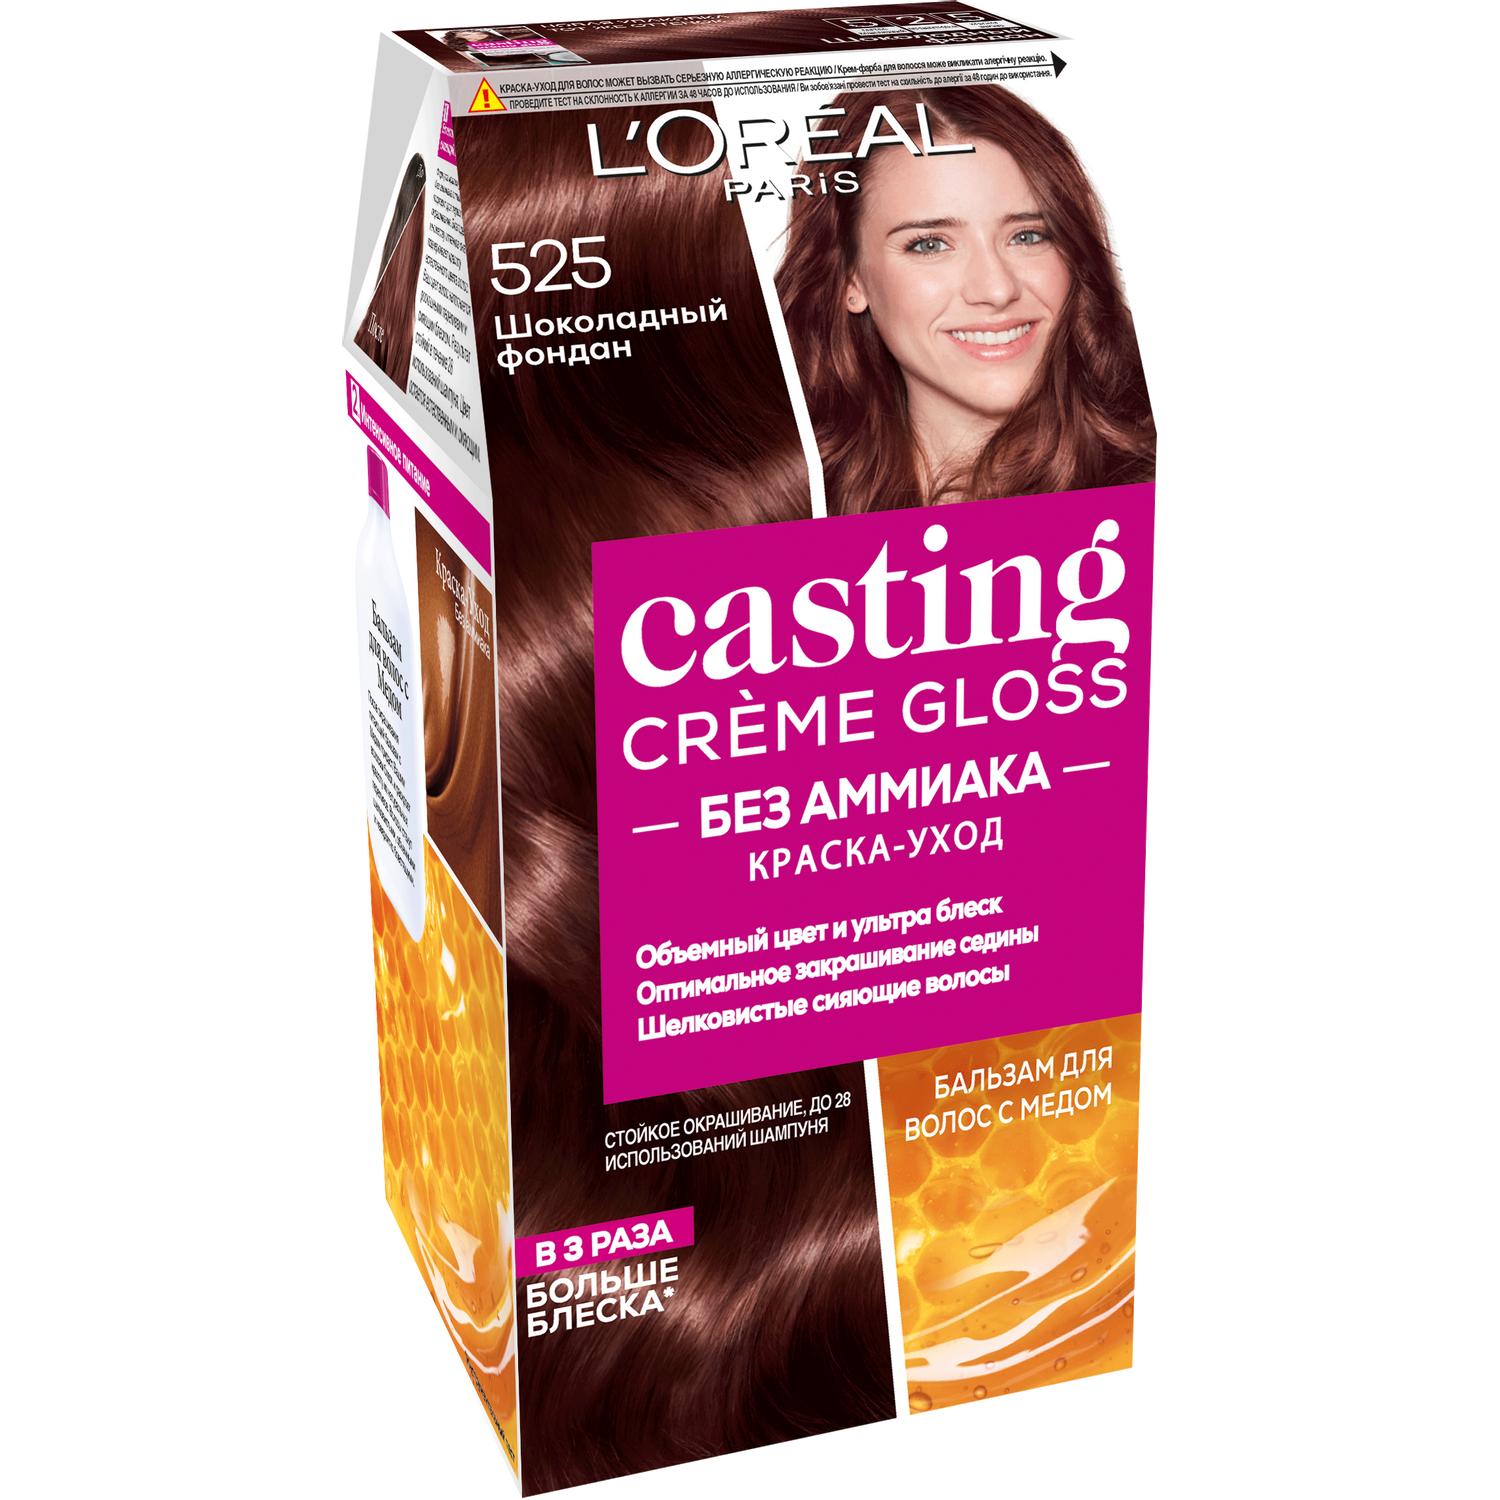 Краска для волос L'Oreal Paris Casting Creme Gloss 525 Шоколадный фондан краска l’oreal casting creme gloss 810 254 мл перламутровый русый а3124700